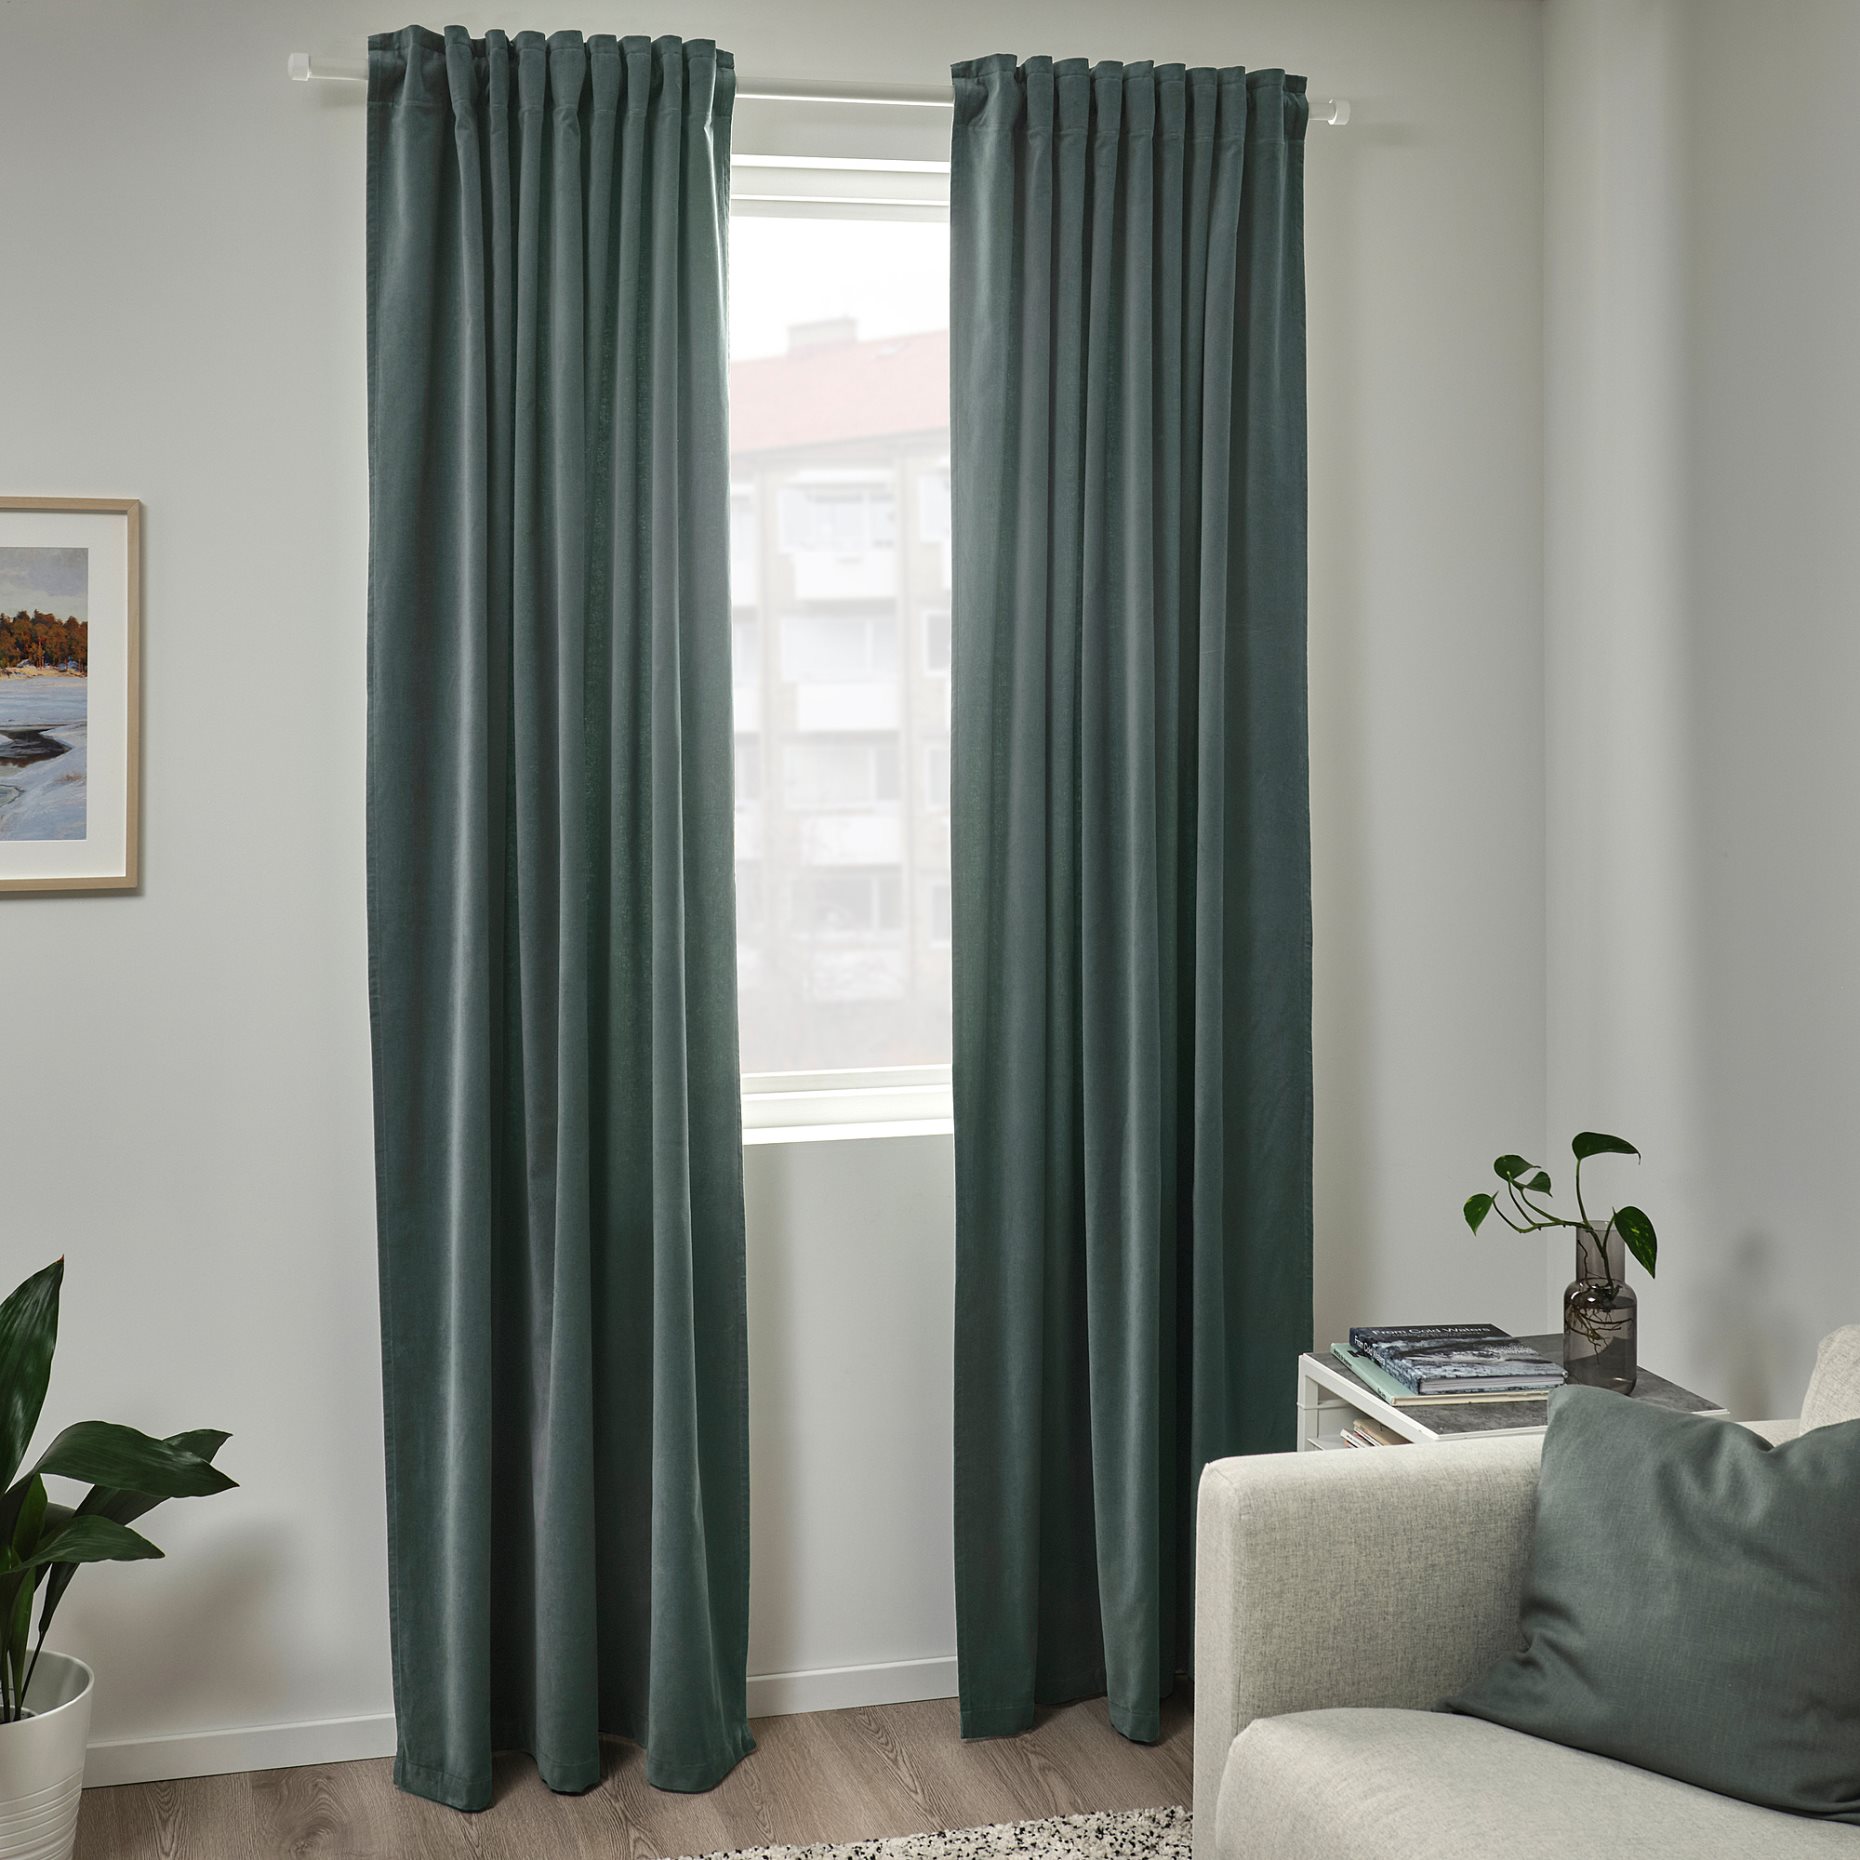 SANELA, room darkening curtains 140x300 cm, 1 pair, 705.129.50